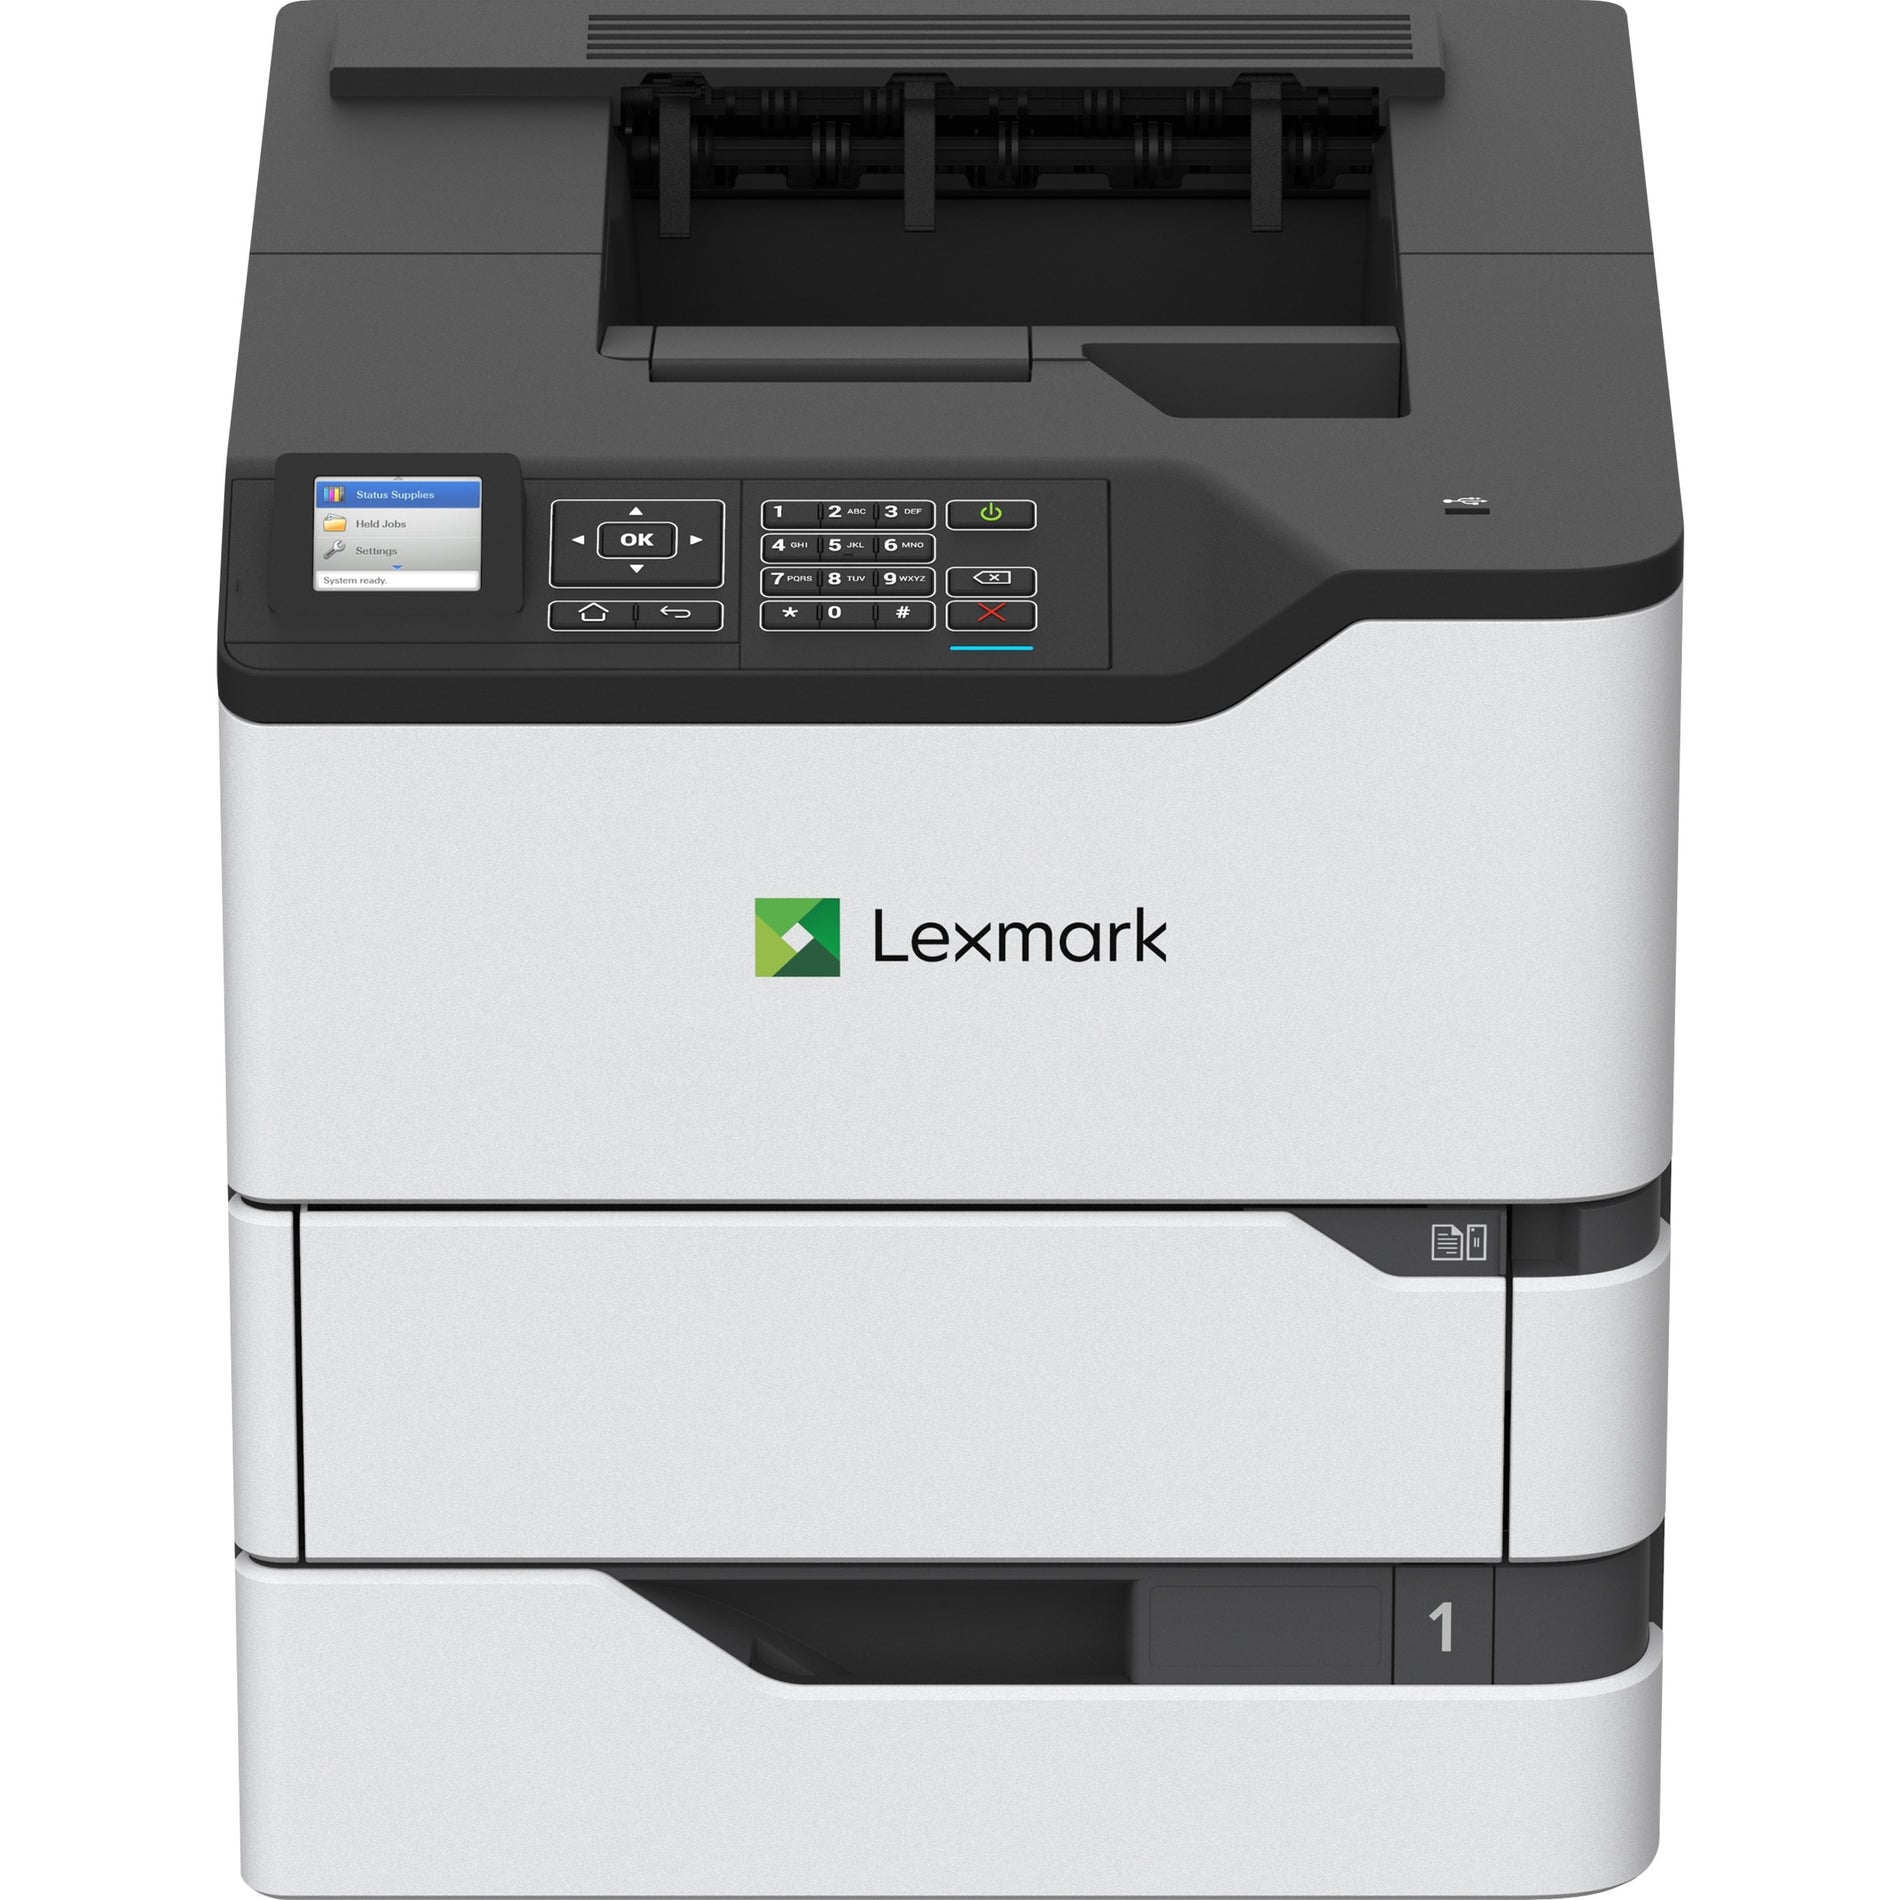 Stampante laser da scrivania Lexmark 50G0200 MS823dn monocromatica 65 ppm stampa fronte/retro automatica 1200 x 1200 dpi